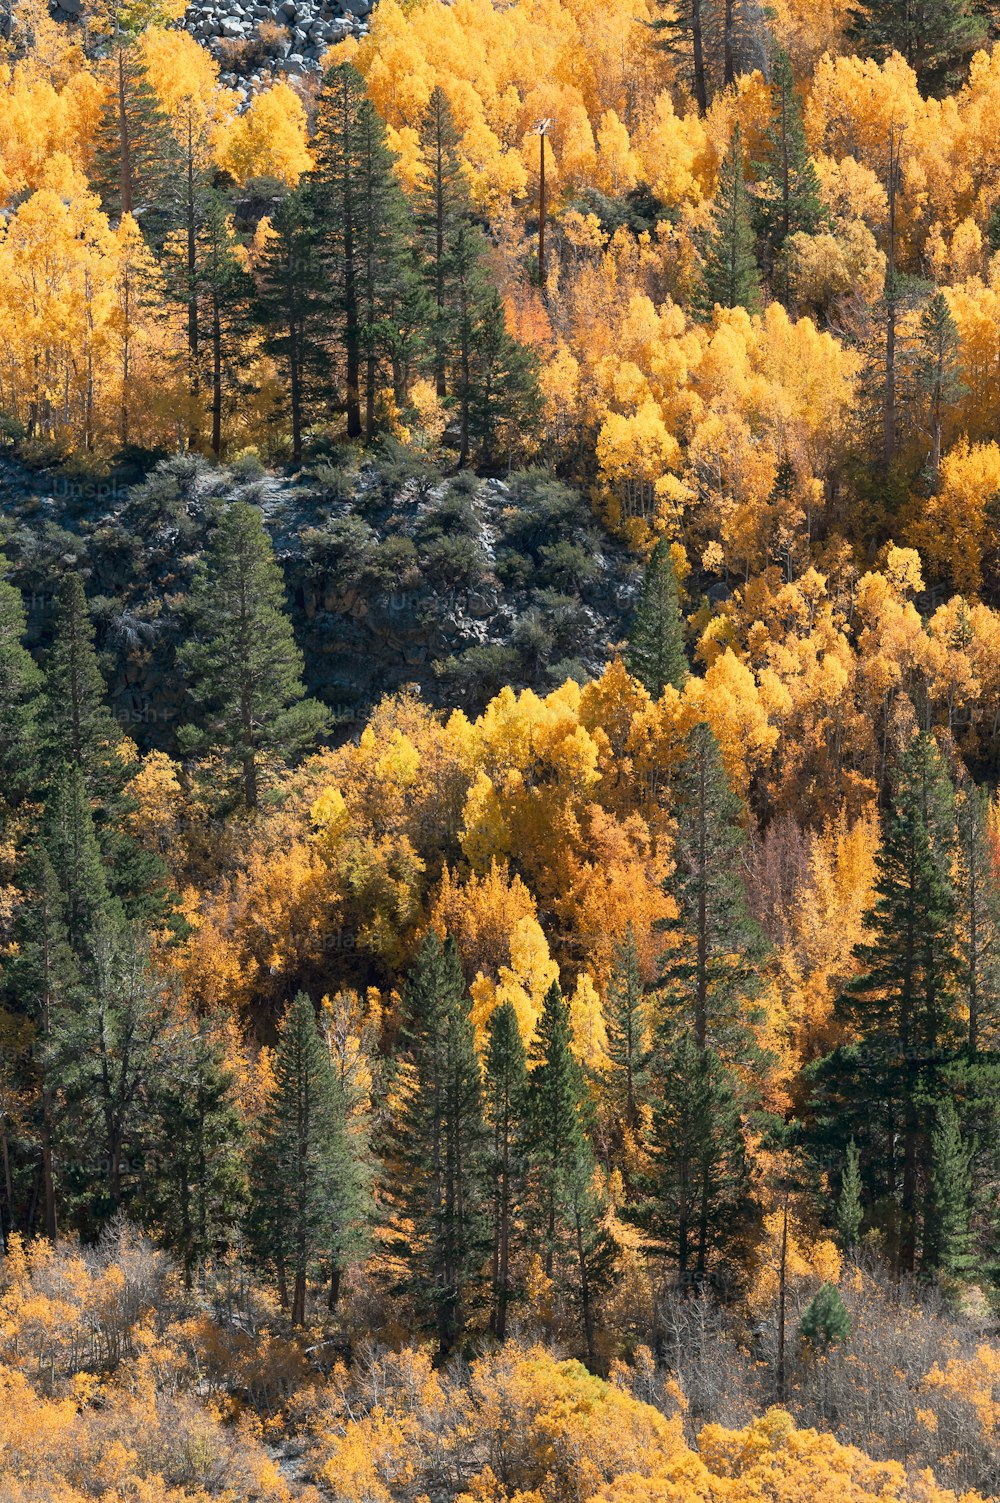 노란 나뭇잎으로 뒤덮인 많은 나무들로 가득 찬 숲